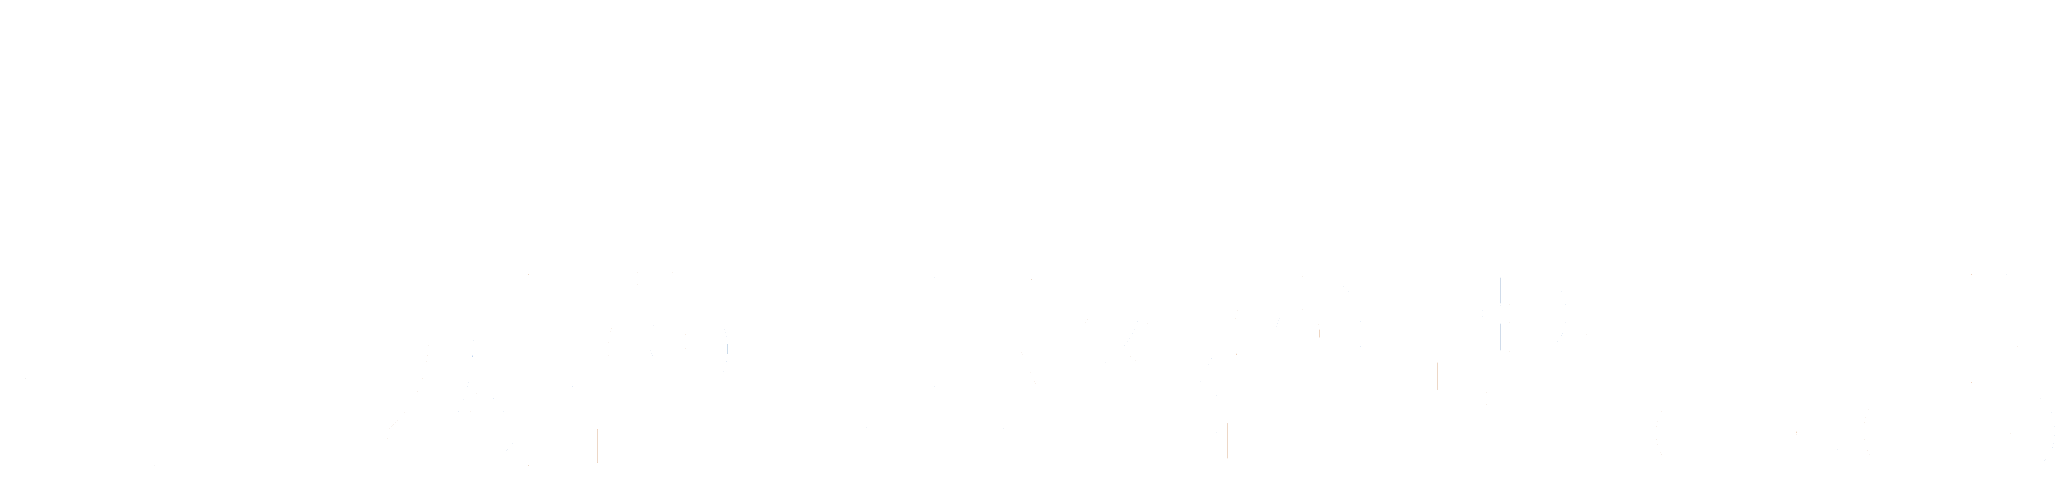 사회민주의원동맹 (리좀) 로고.png